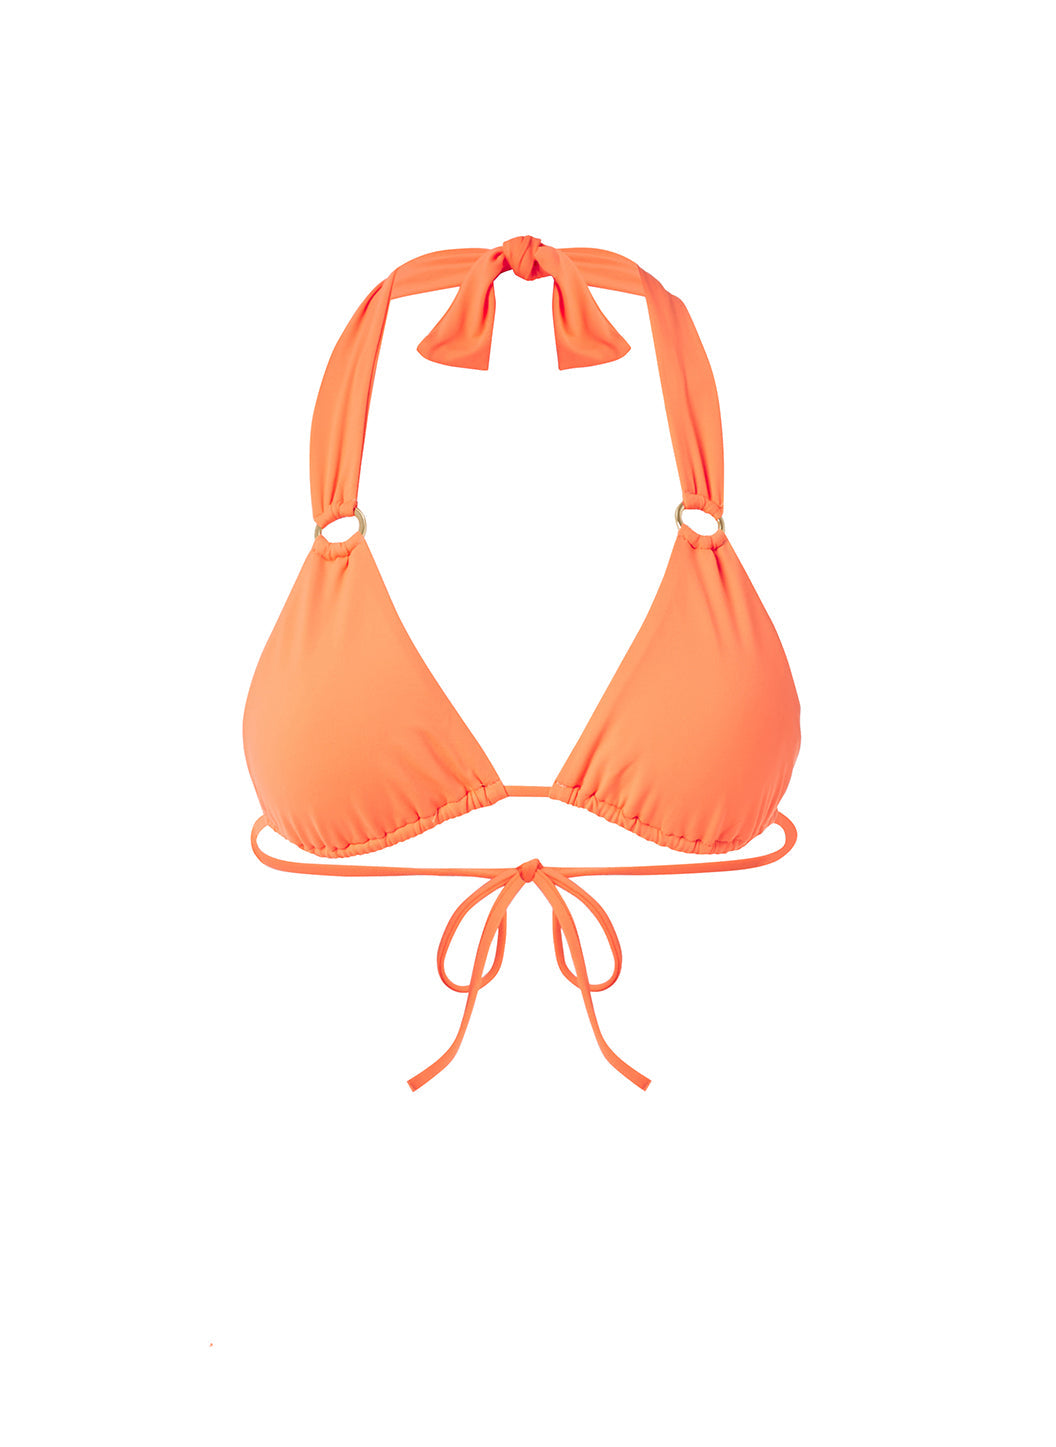 Orange Bikini Top - Halter Bikini Top - Upside Down Bikini Top - Lulus